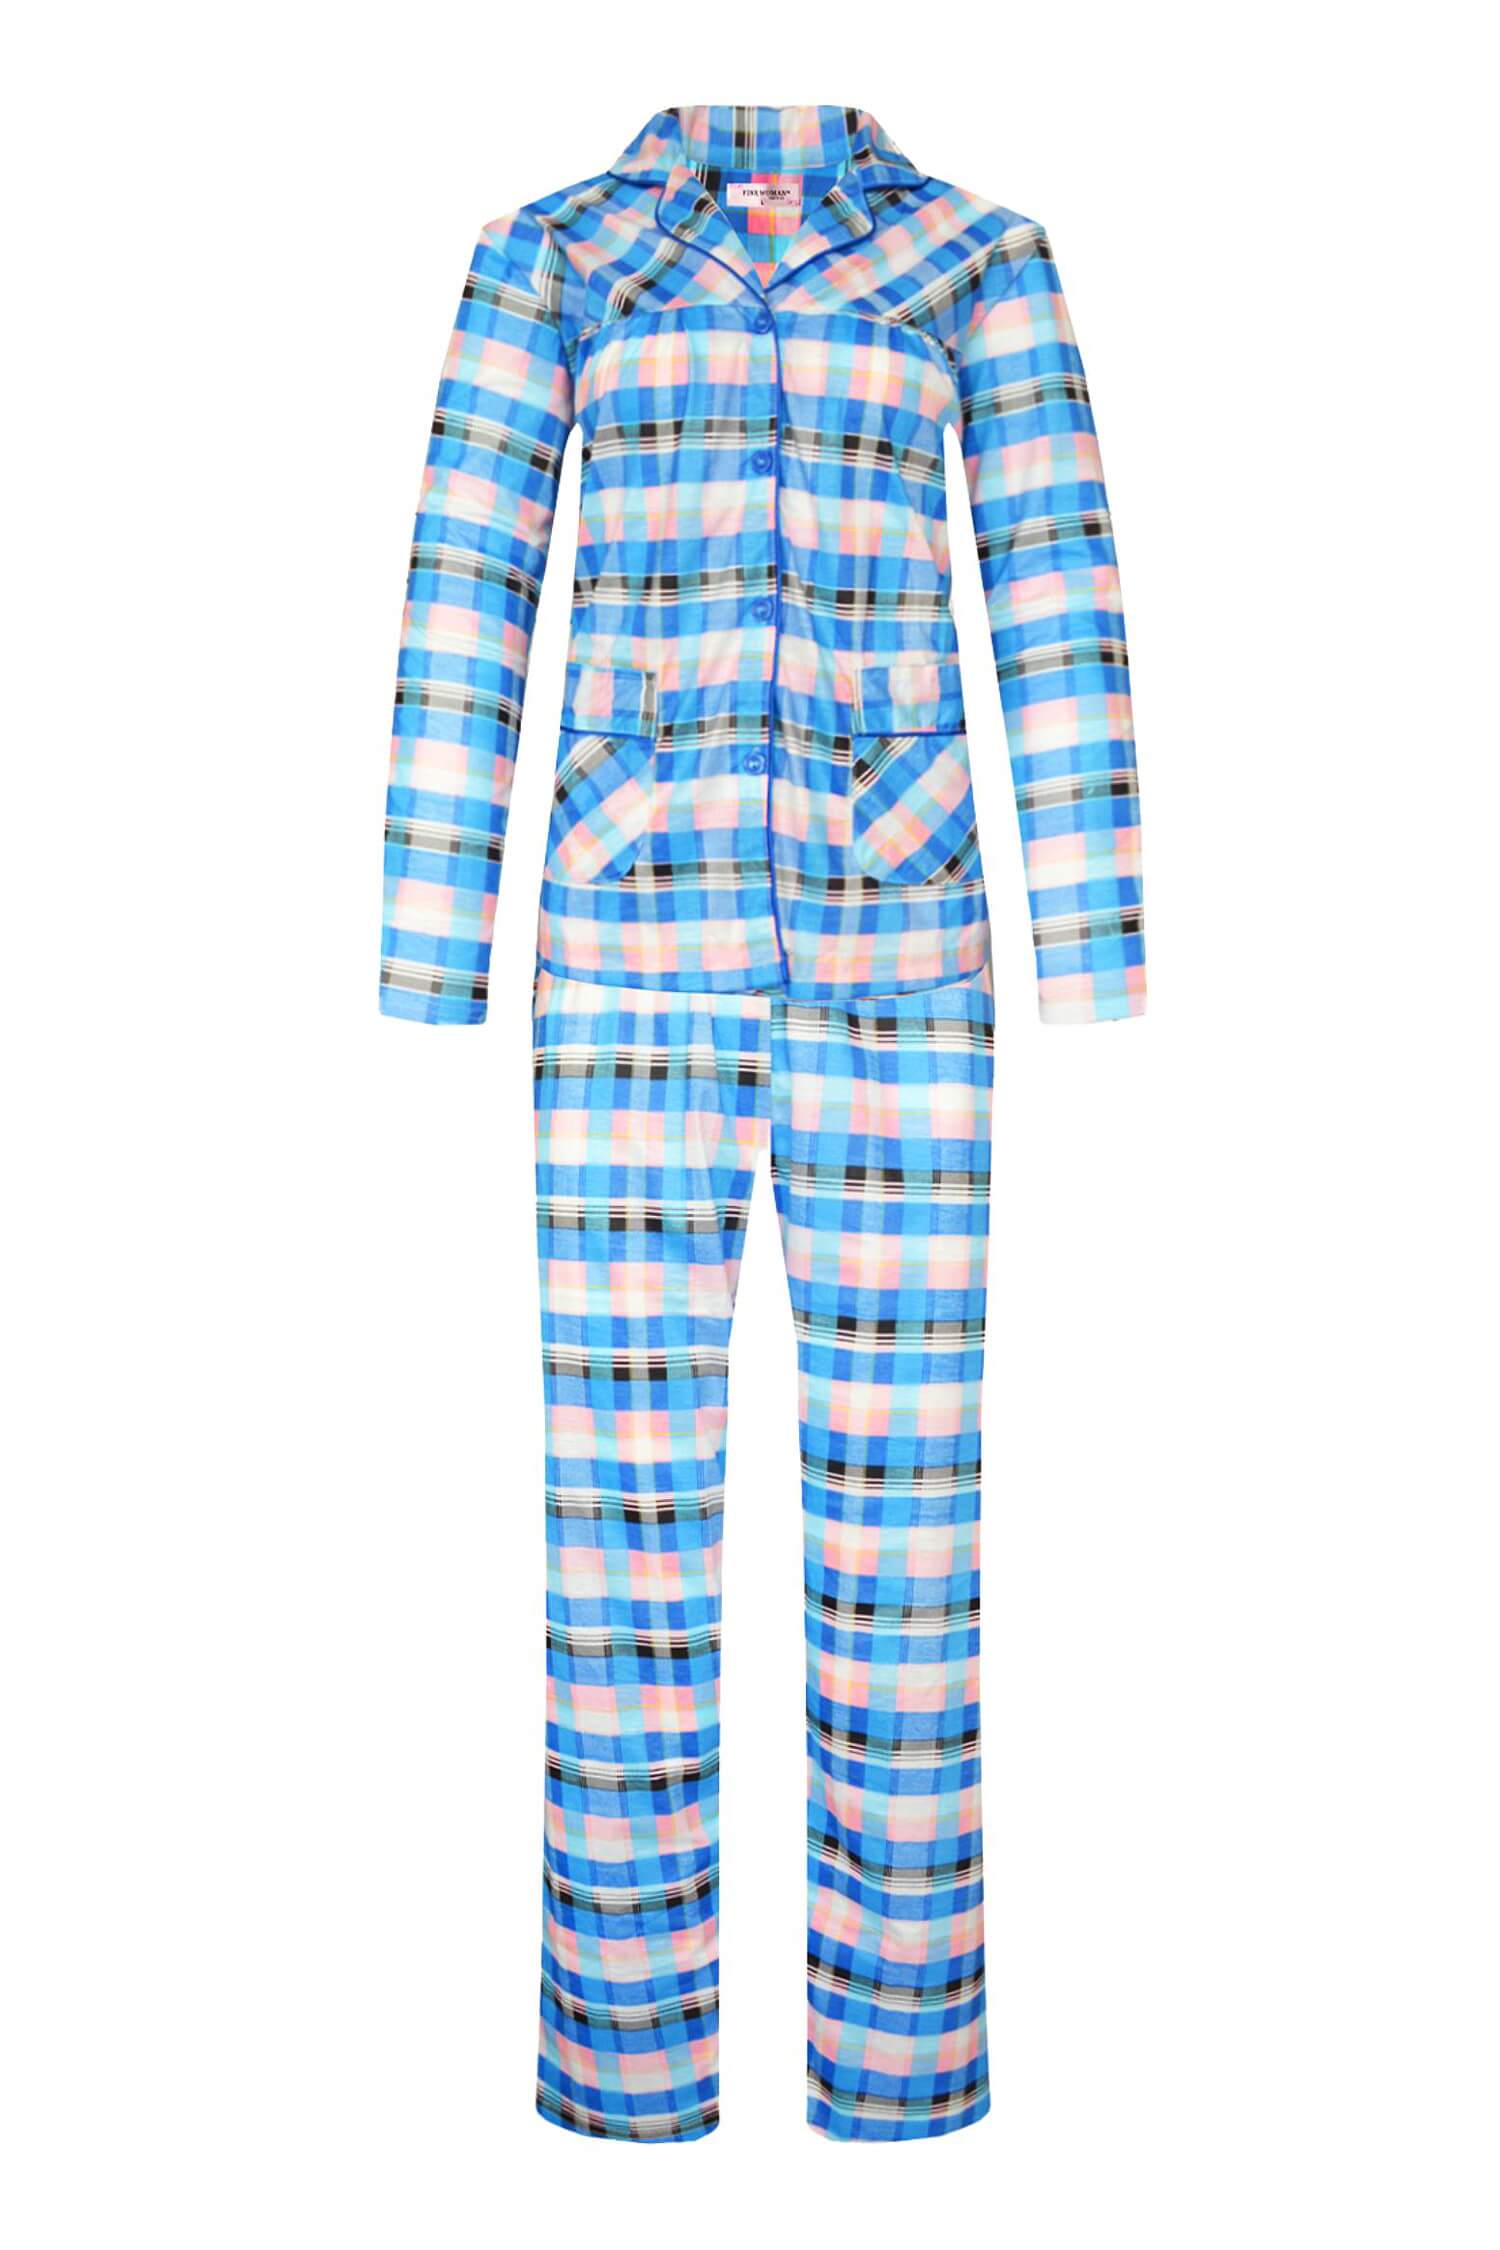 Odeta dámské kostkované pyžamo dlouhé 2271 L modrá